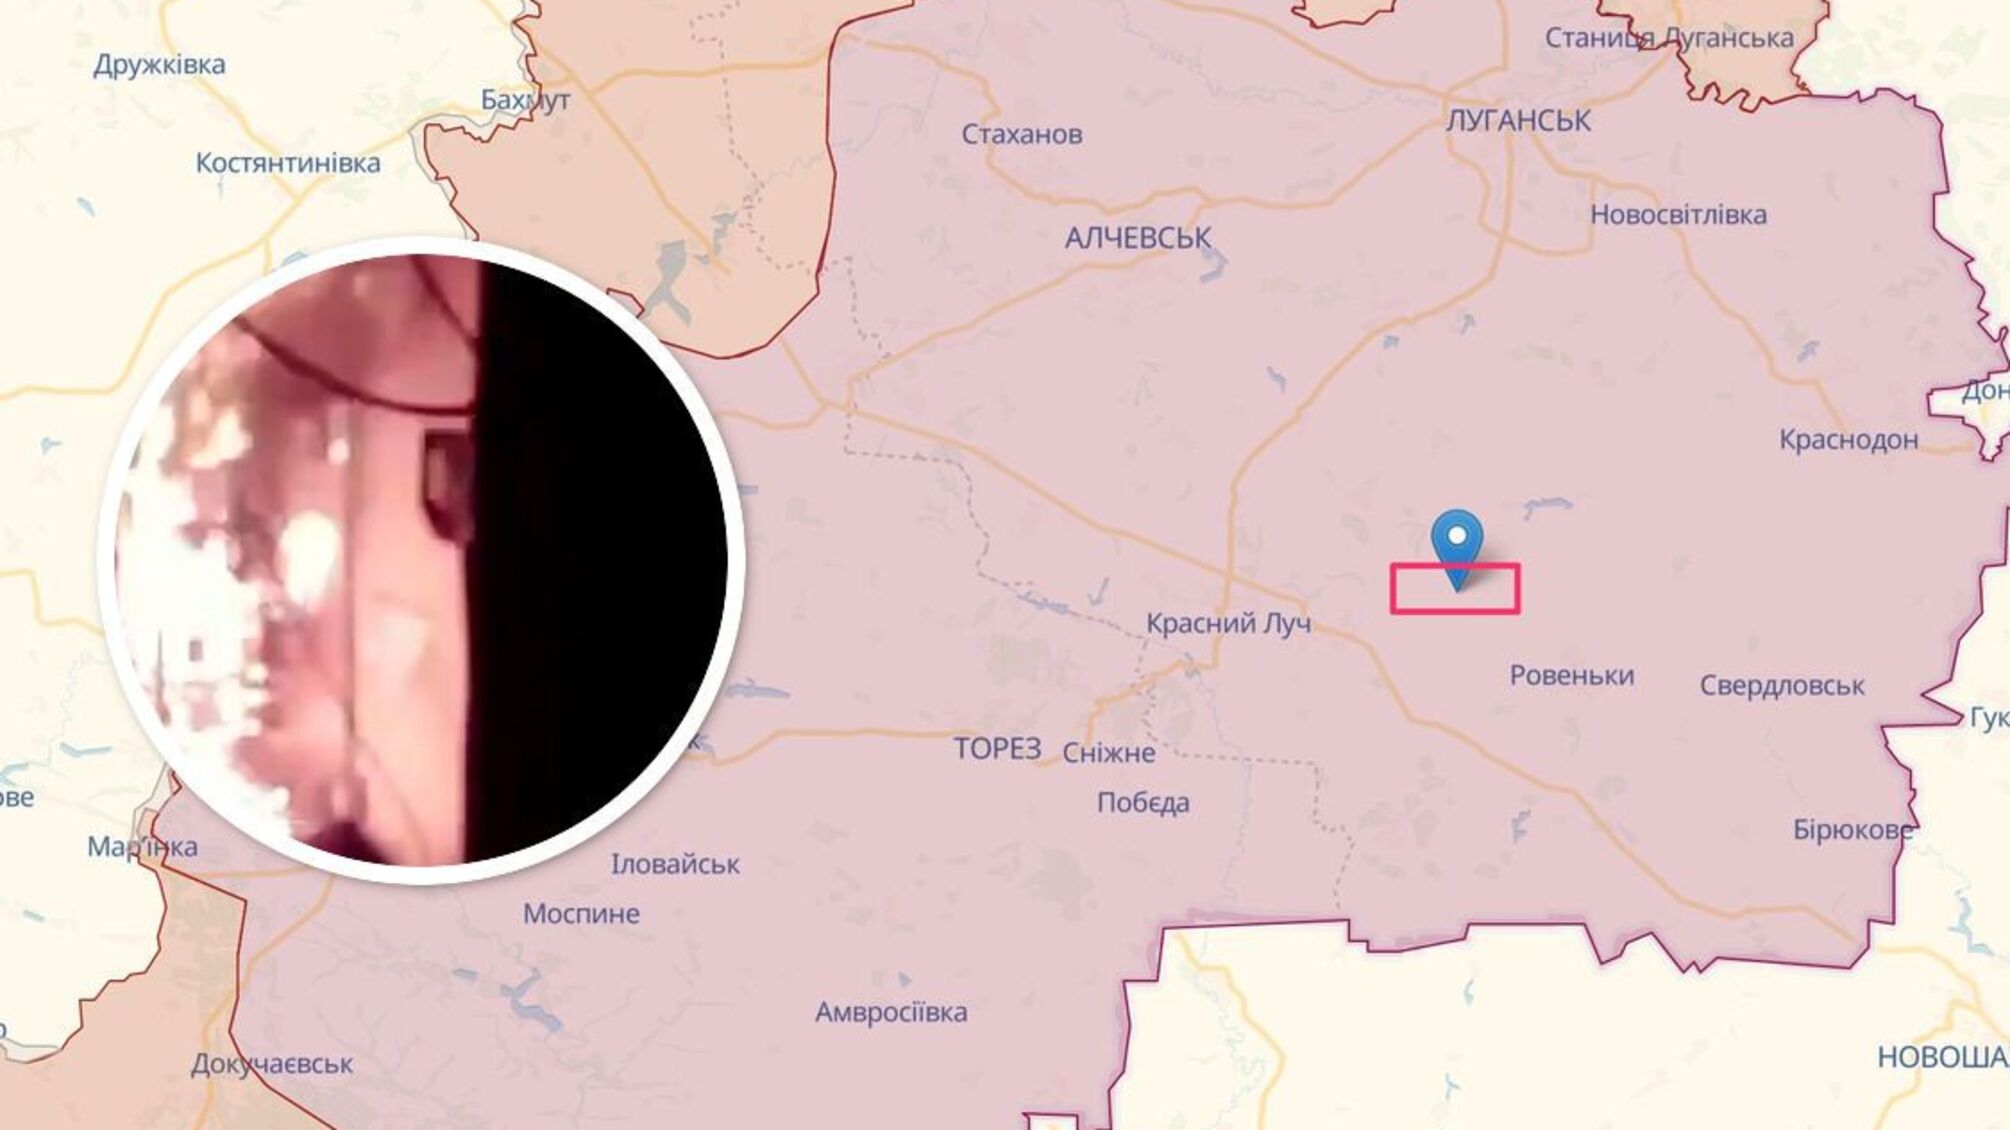 Горить-палає: на окупованій Луганщині партизани підпалили пункт керування залізницею (відео)